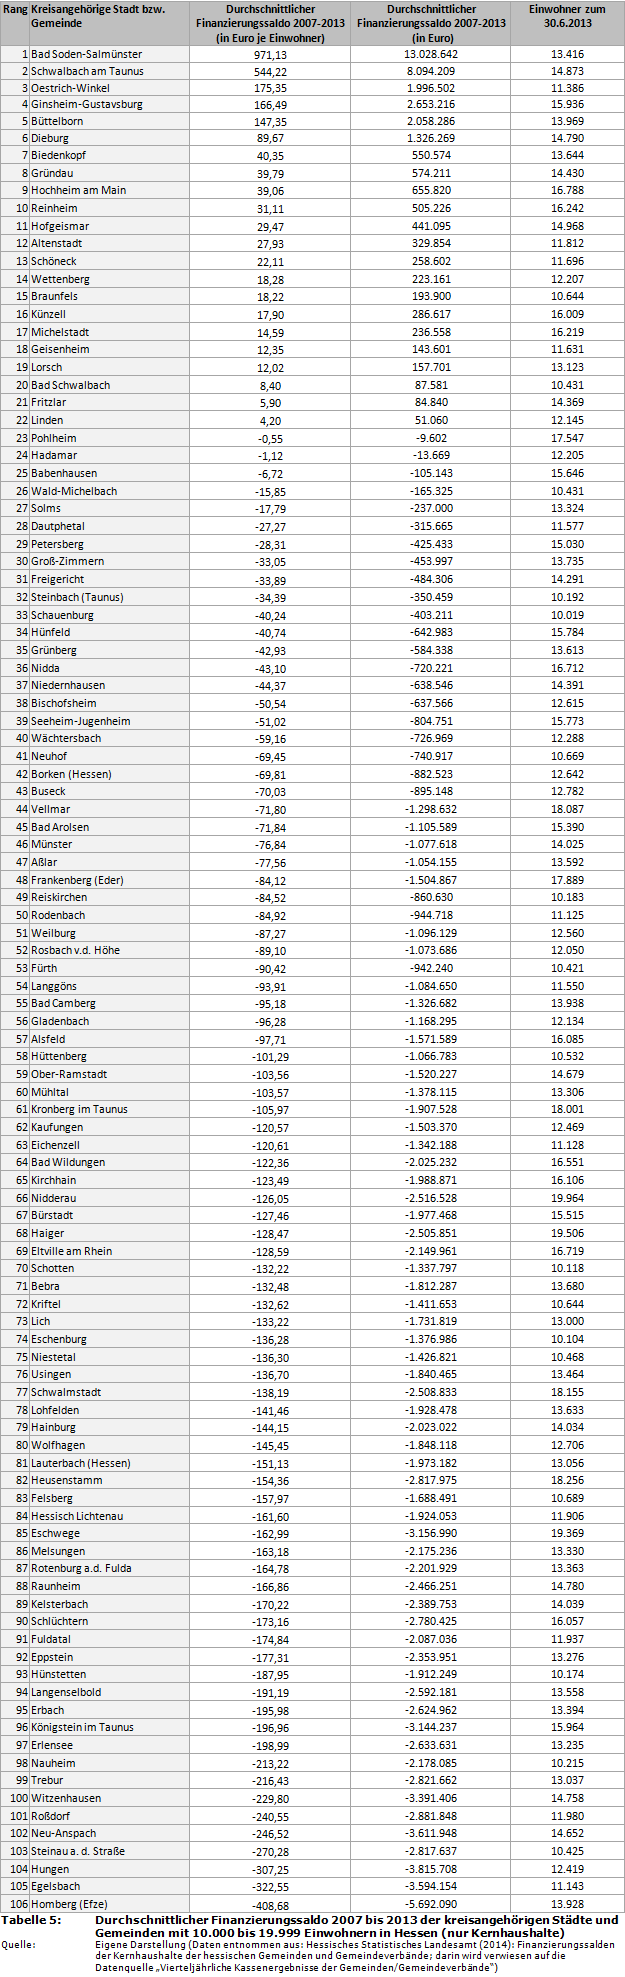 Durchschnittlicher Finanzierungssaldo 2007 bis 2013 der kreisangehörigen Städte und Gemeinden mit 10.000 bis 19.999 Einwohnern in Hessen (nur Kernhaushalte)